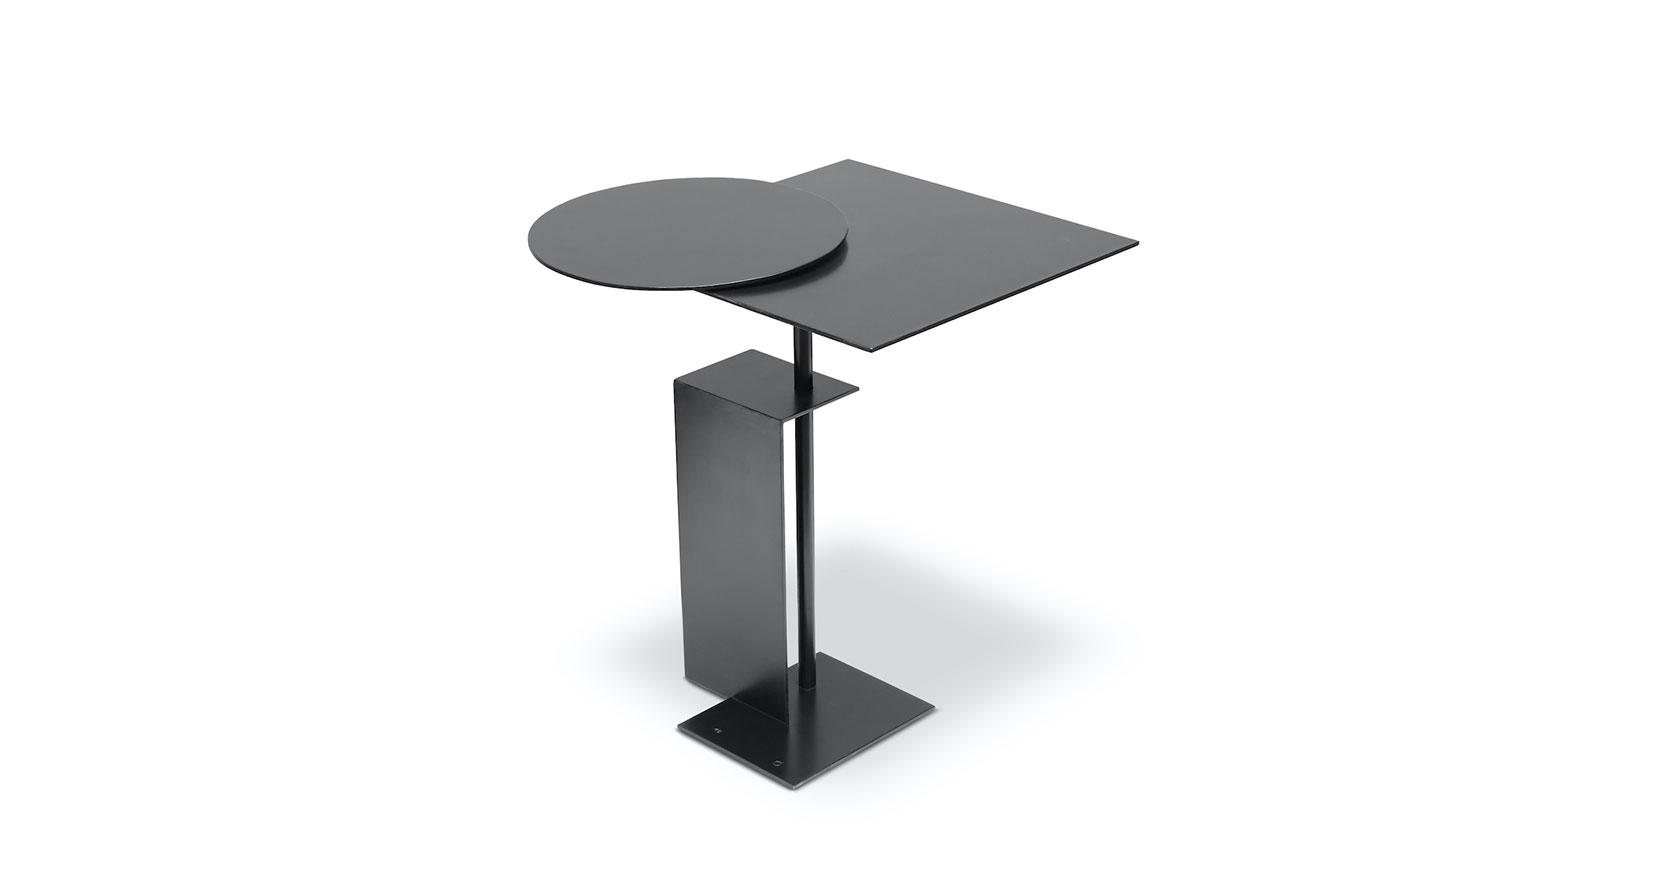 Eric Schmitt, petite table architecturale géométrique en métal noir plié, plateau pivotant avec un rond ouvert décentré d'un plateau carré, pied rectangulaire en métal noir